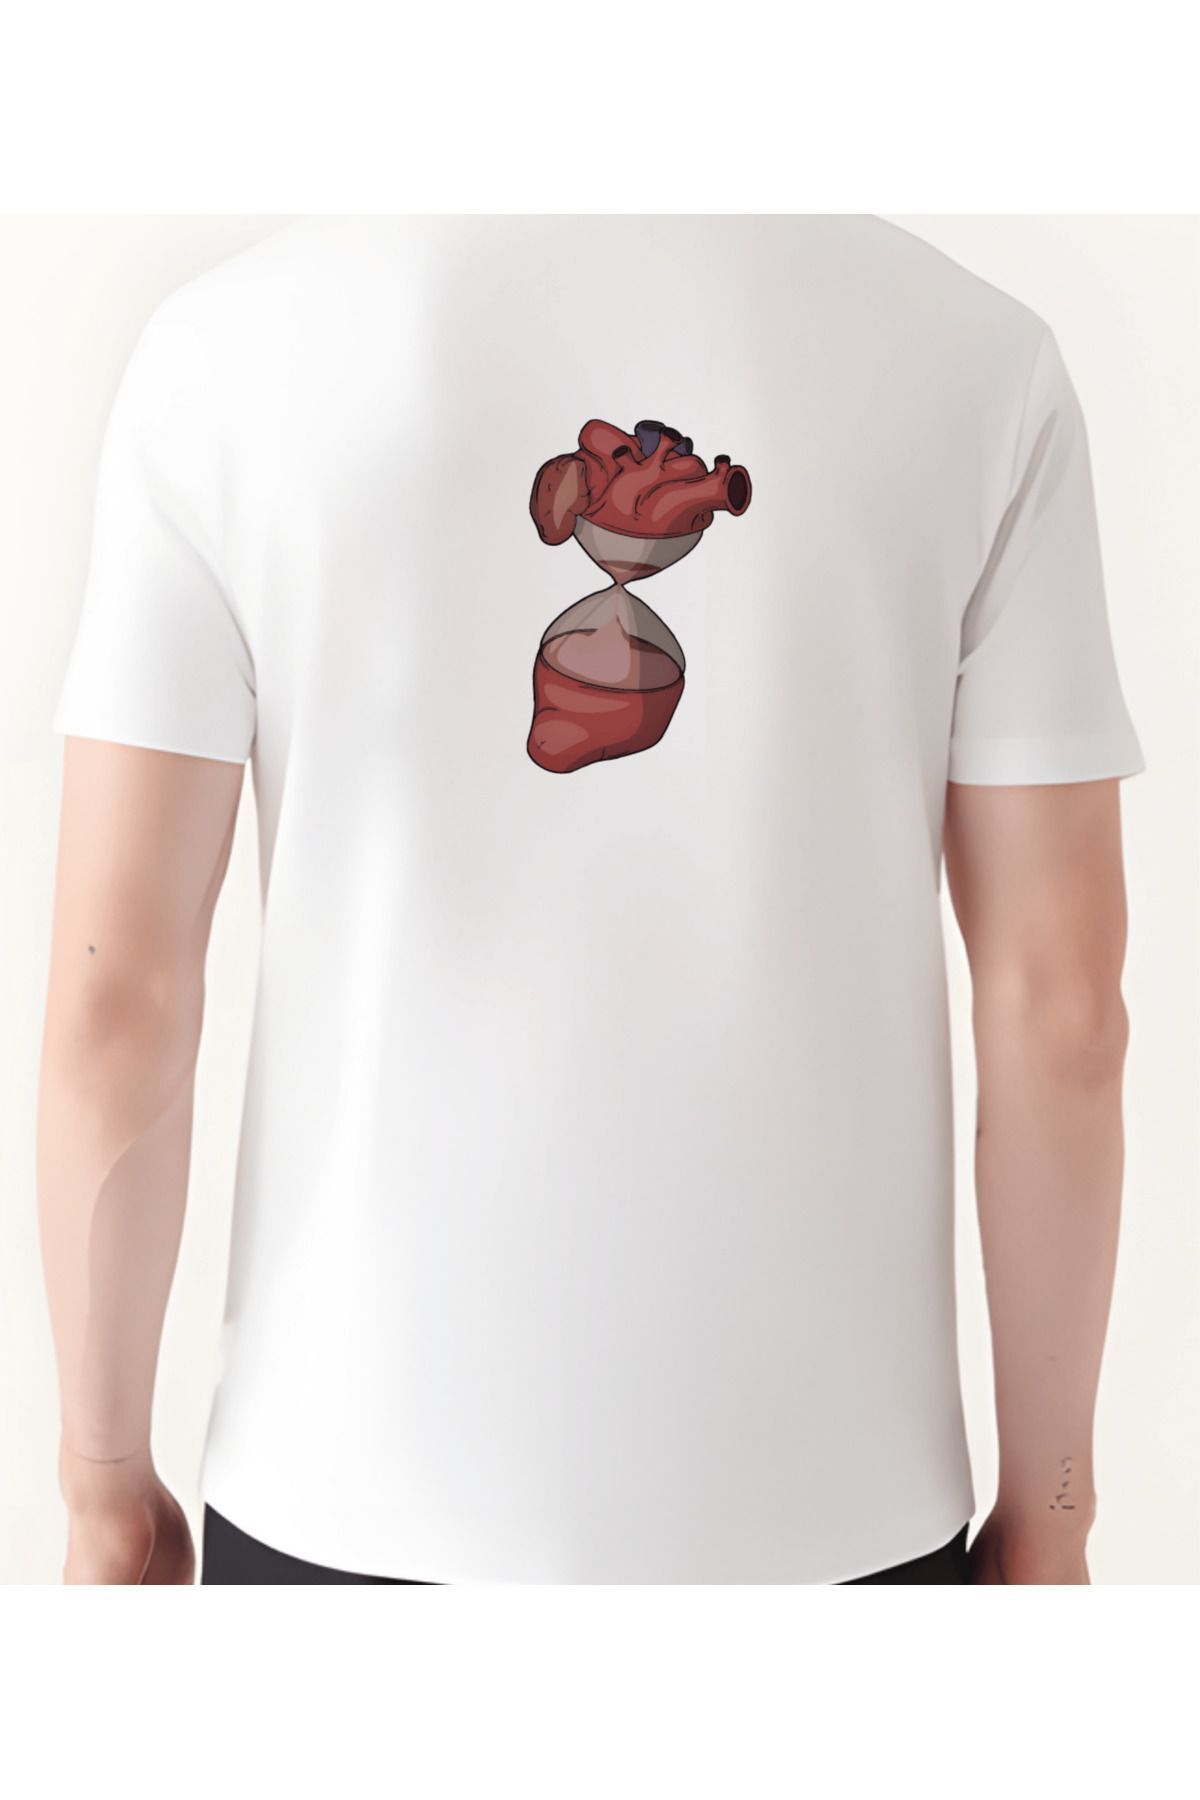 ZAFOİN Kalp Kum Saati Tshirt Baskılı T-shirt Erkek Kadın Unisex Tişört Oversize Tşört